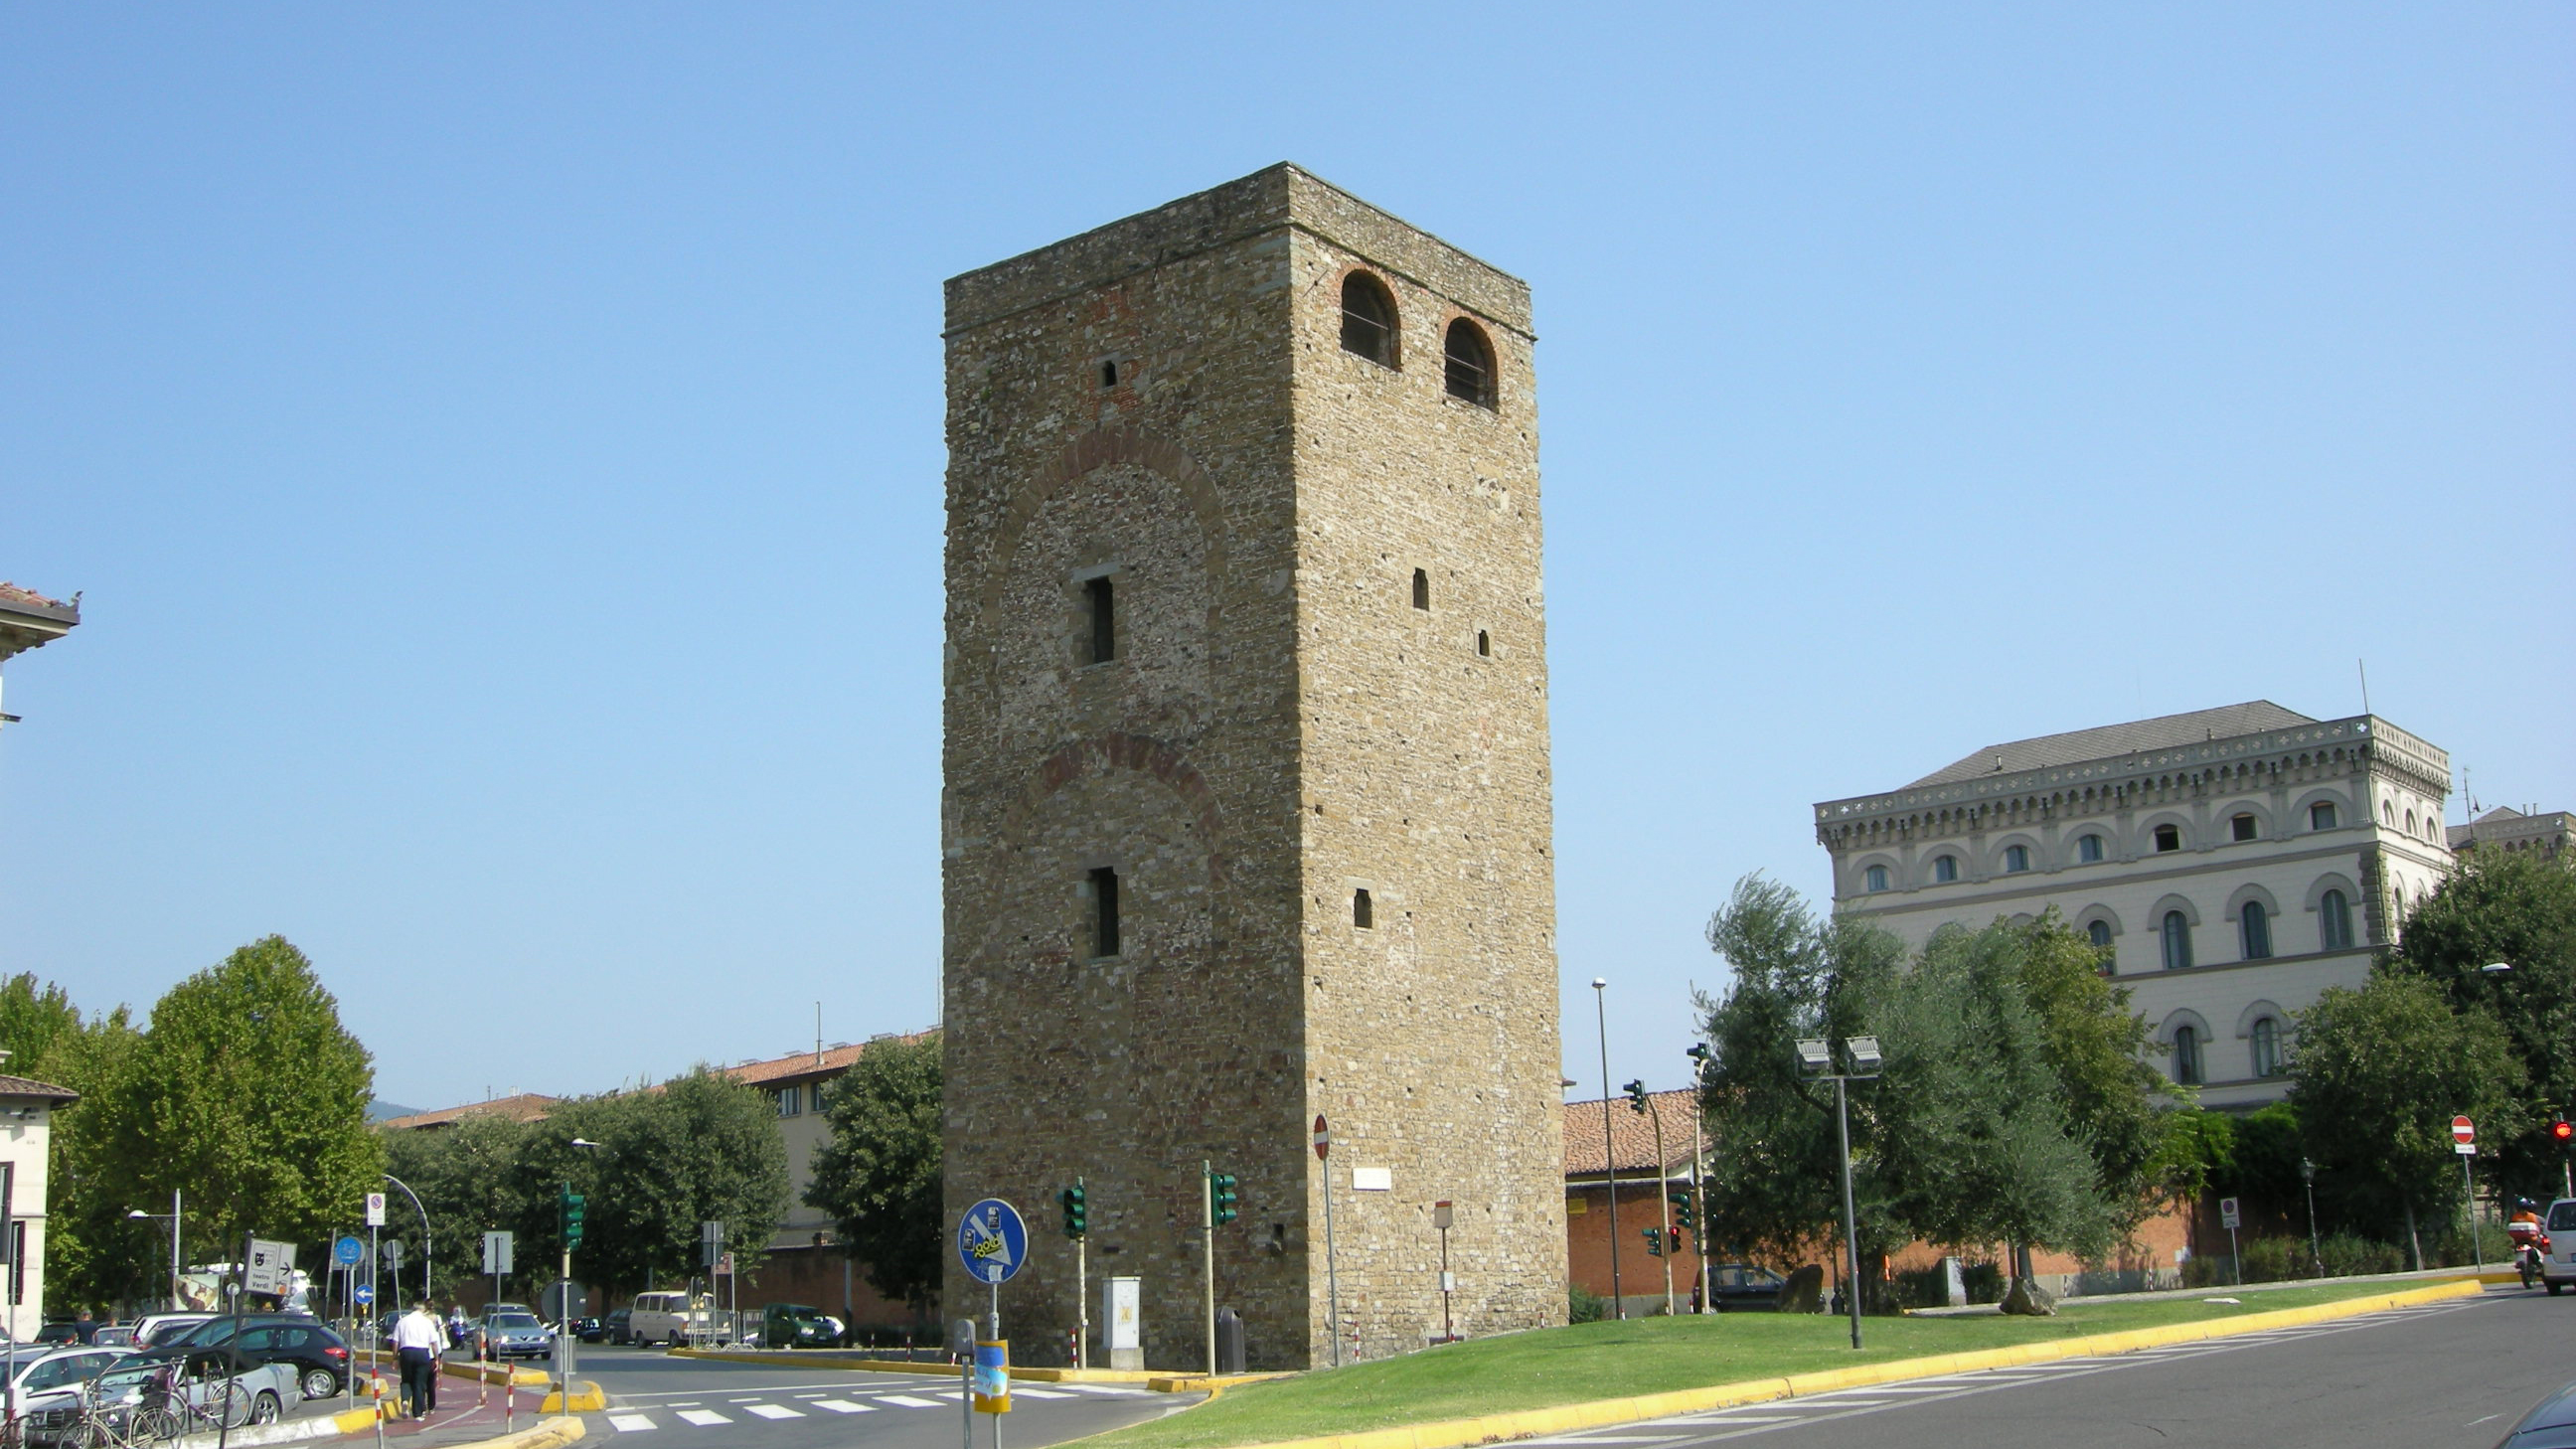 Torre della Zecca Vecchia